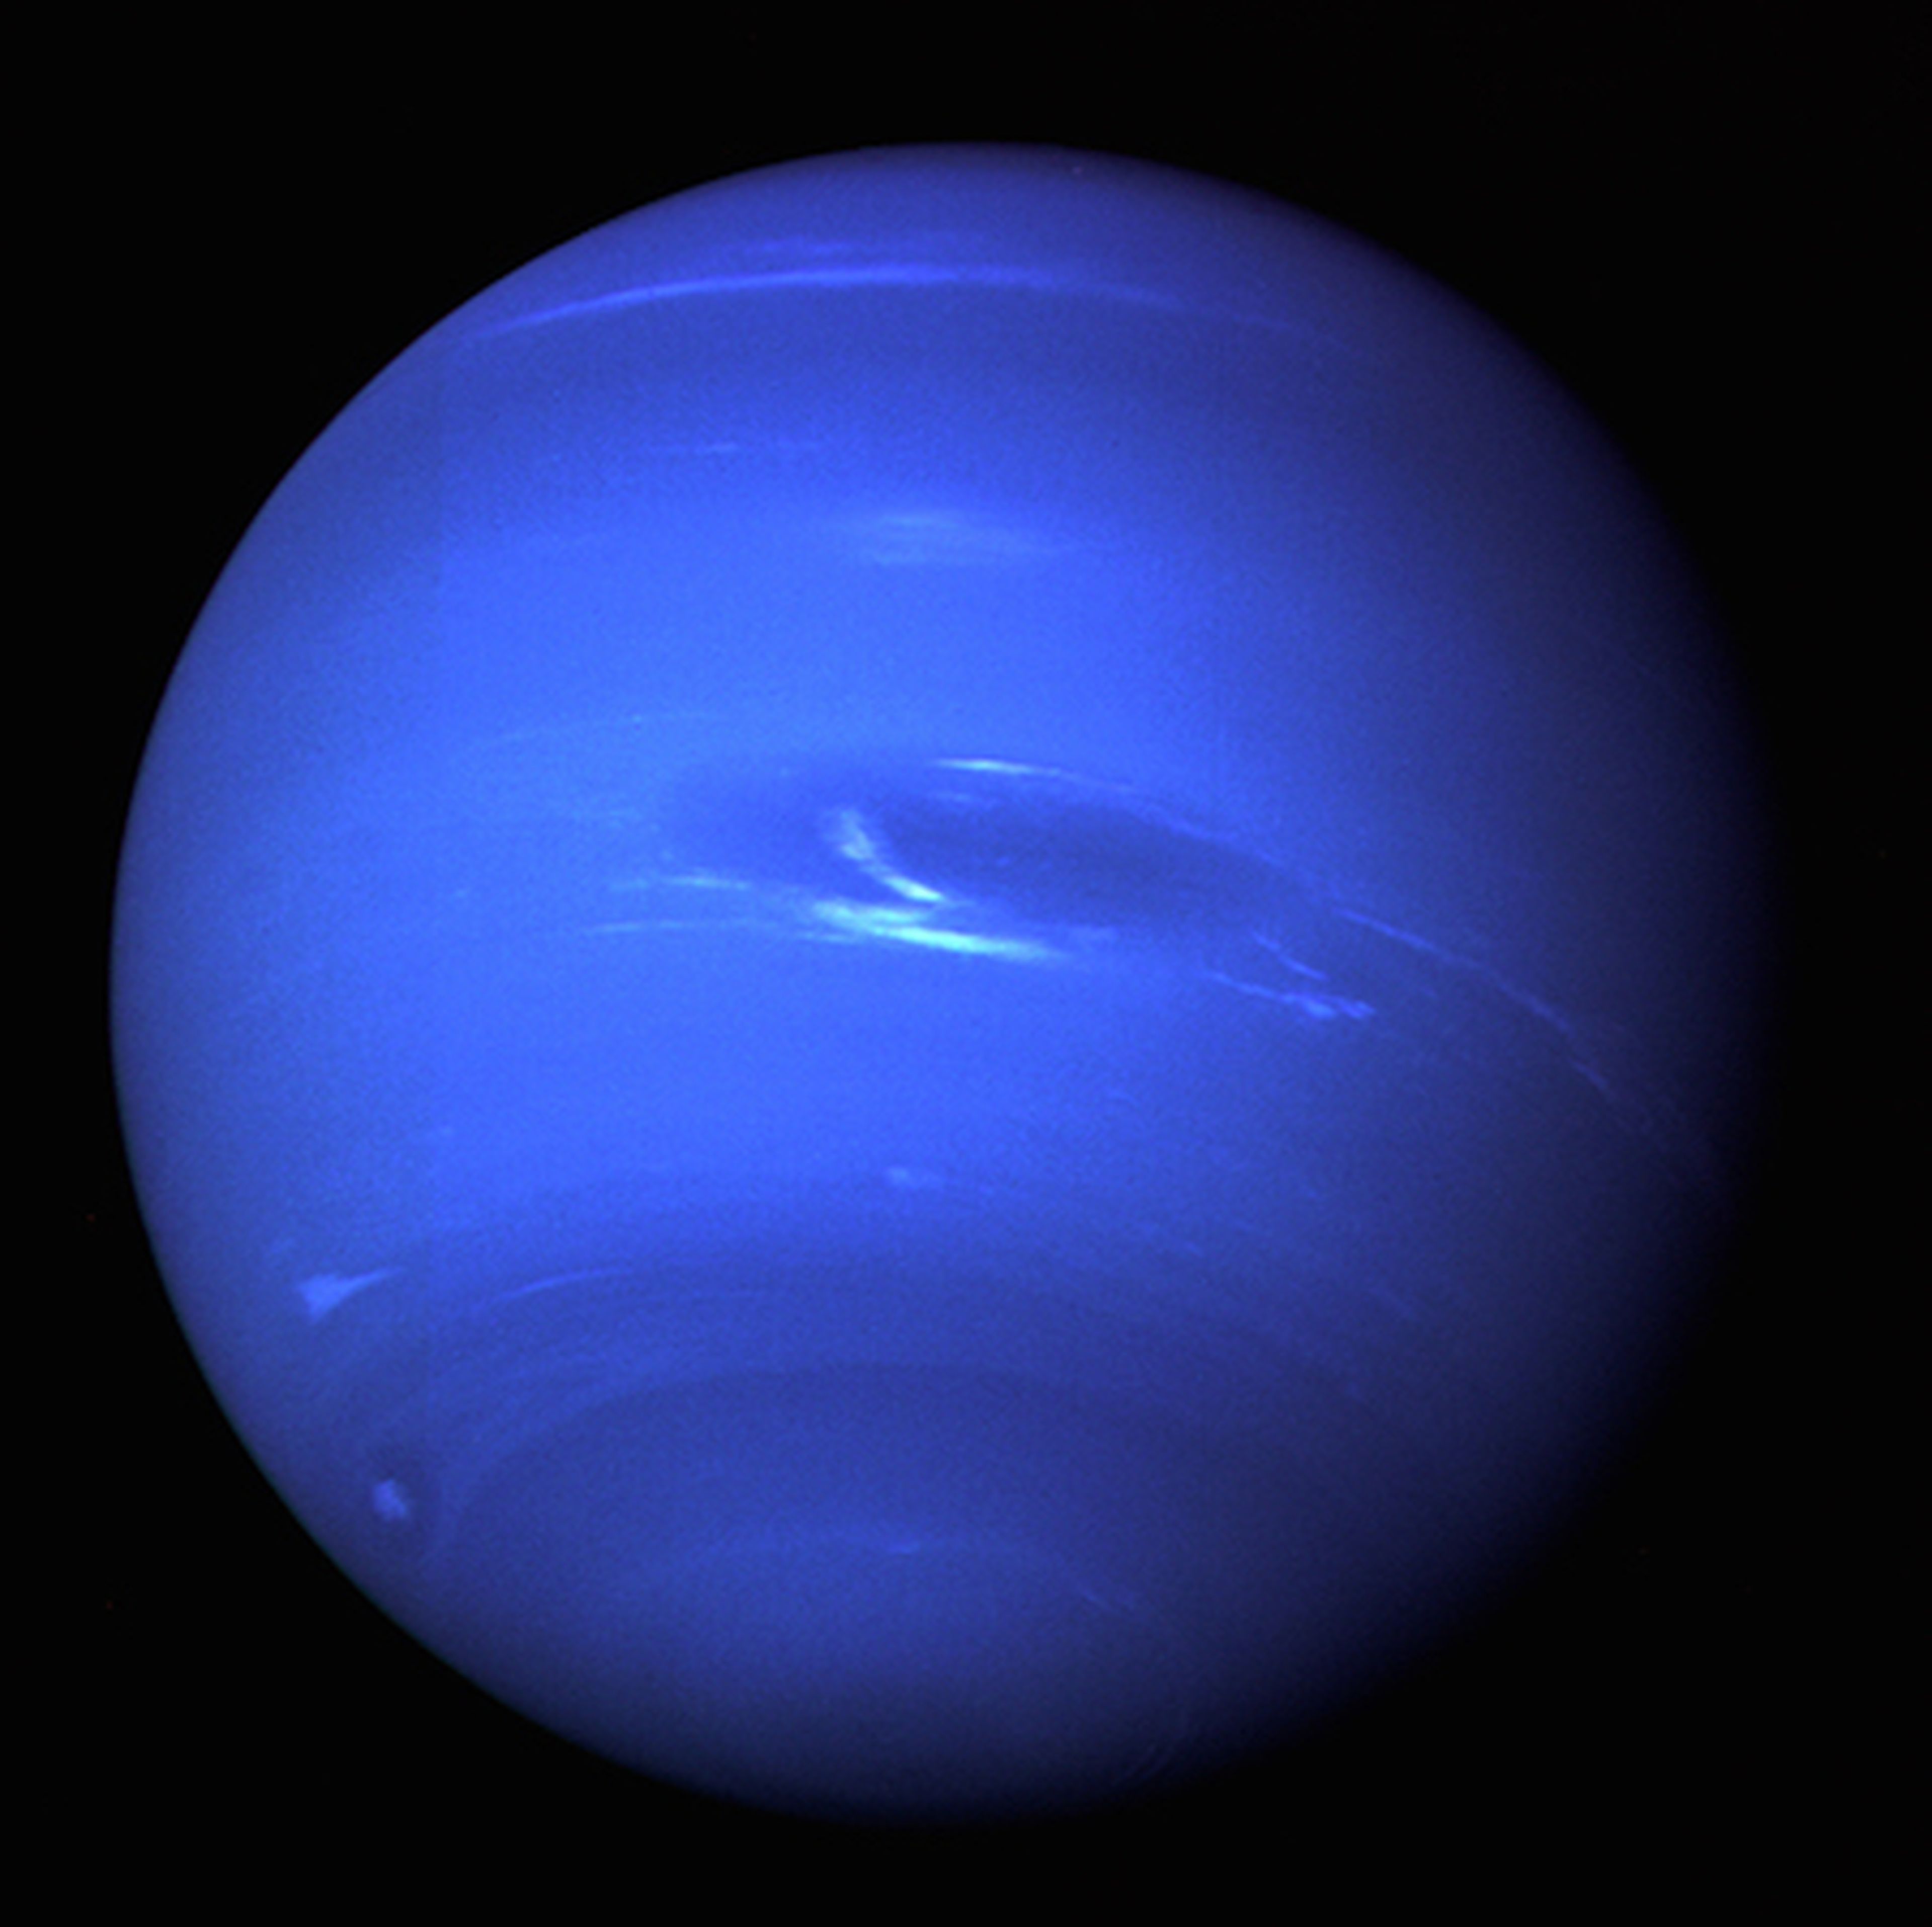 Fotografía de Neptuno tomada por la sonda Voyager 2 de la NASA, en 1989.